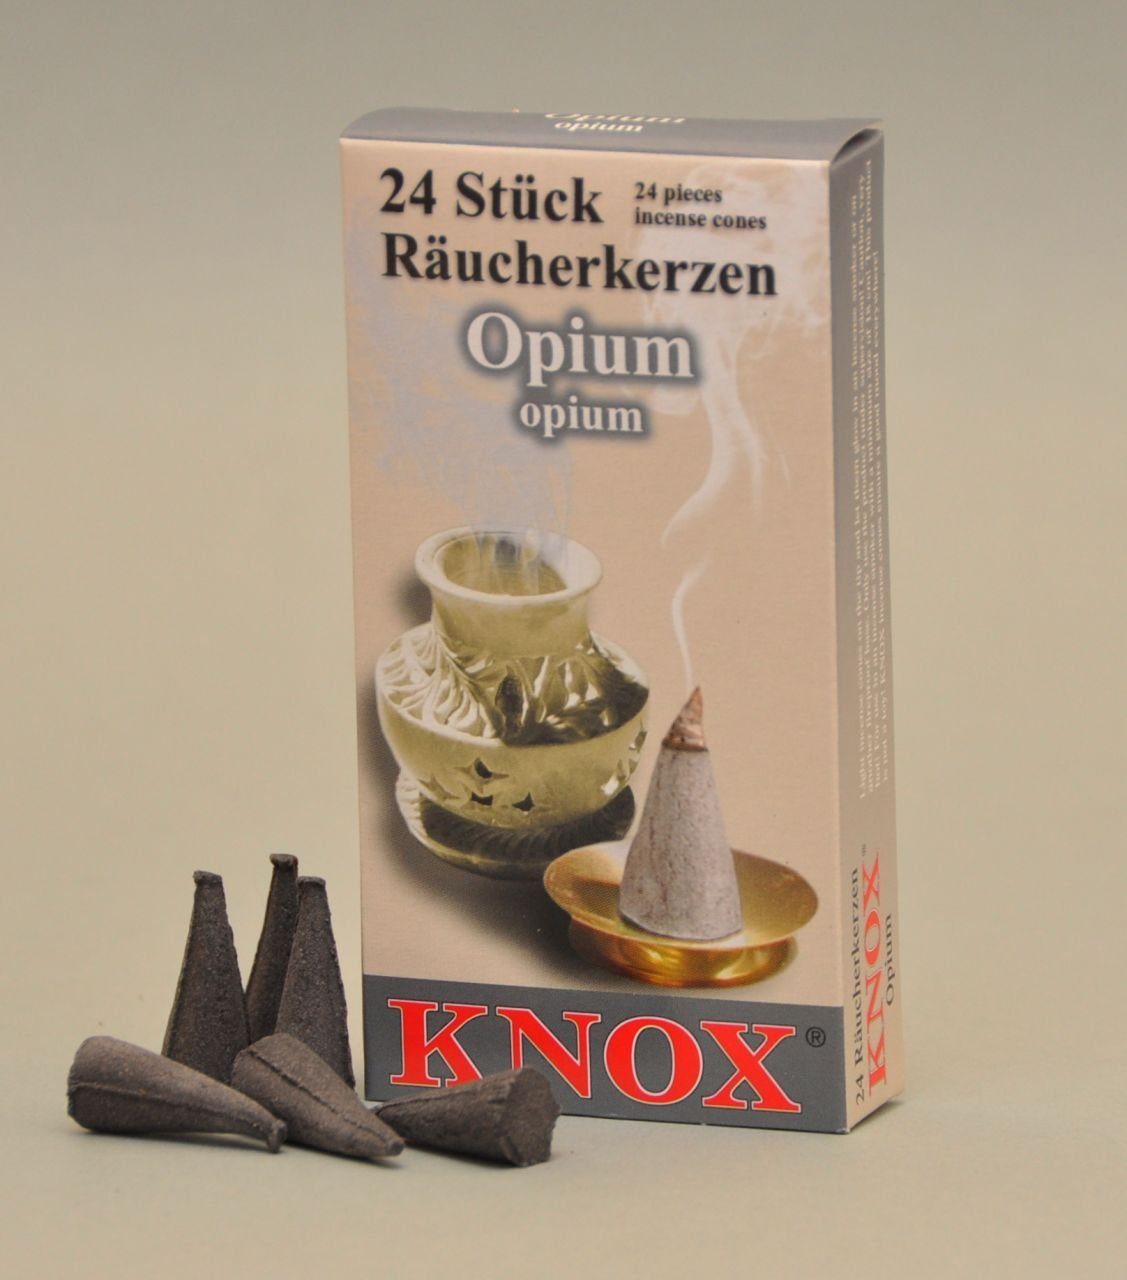 KNOX Räucherhaus Knox Räucherkerzen - Stück 24 Opium